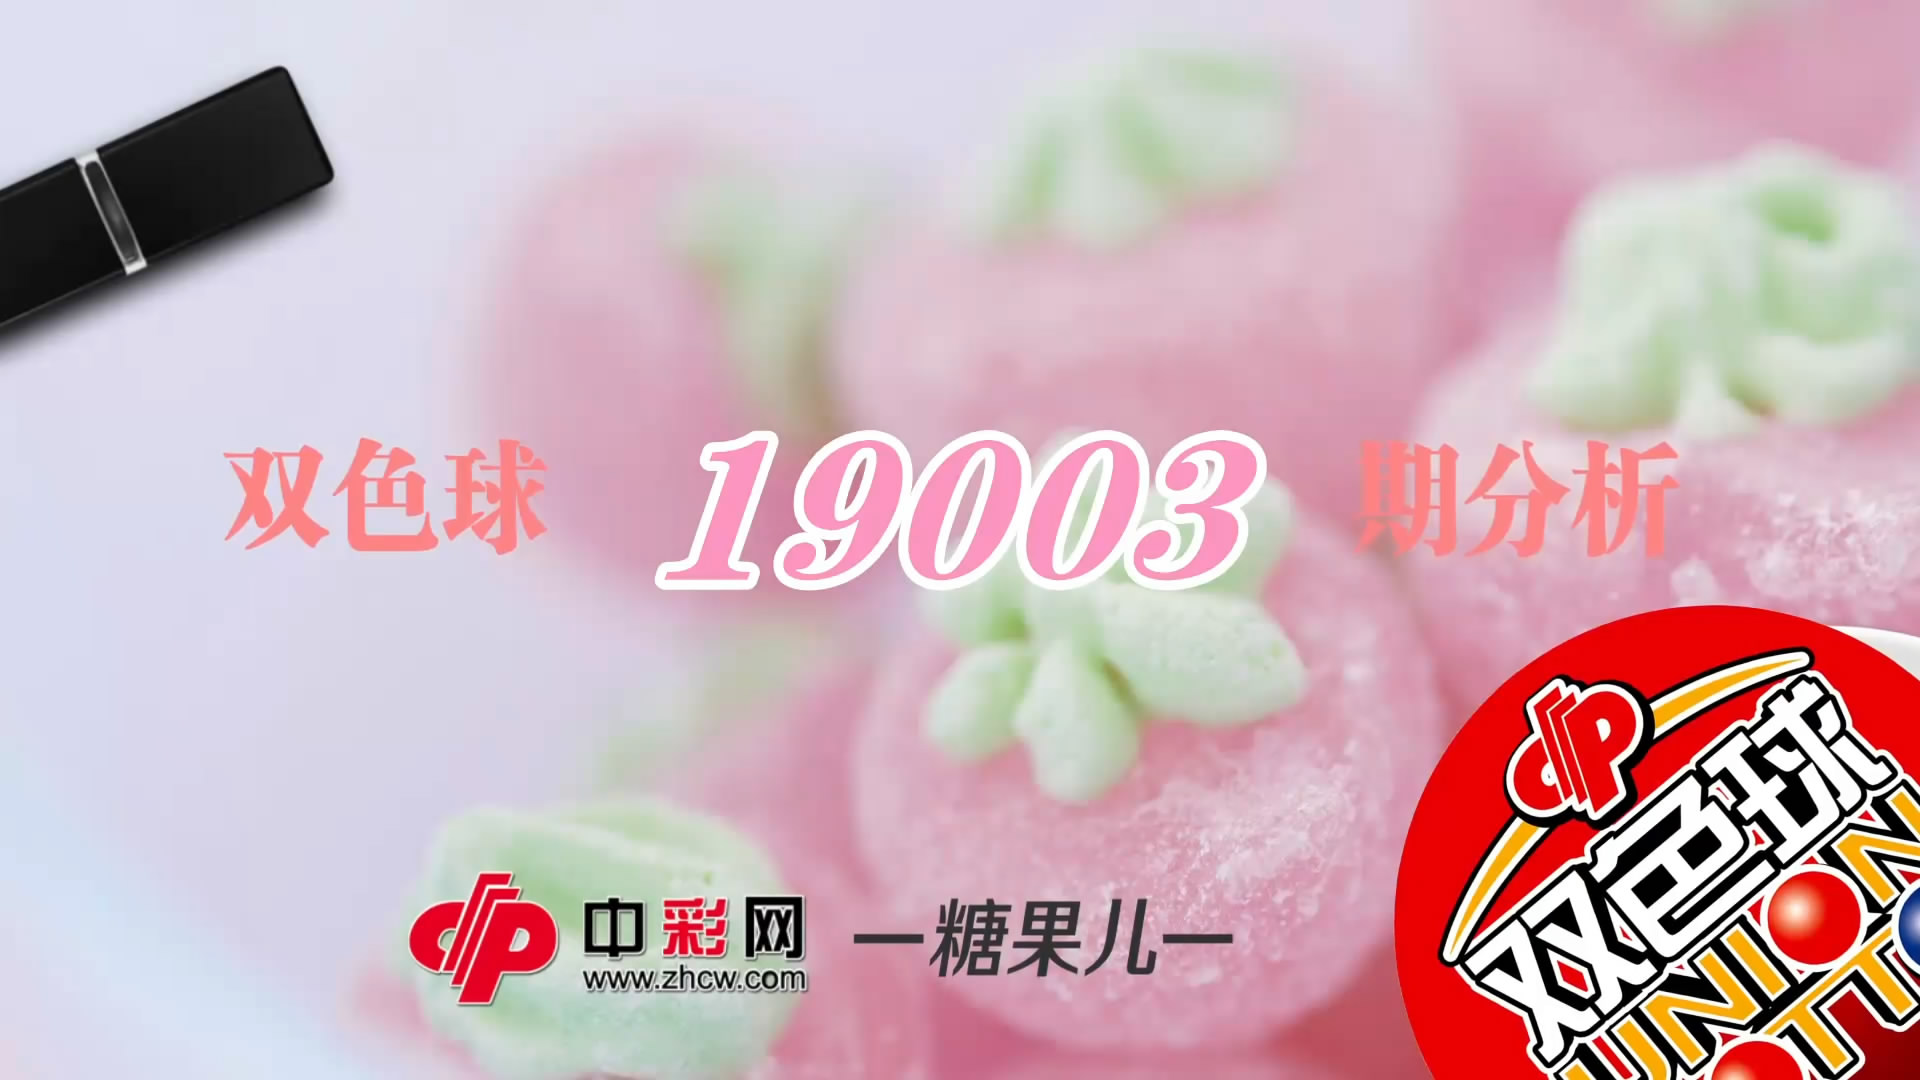 【中彩视频】糖果儿双色球第19003期